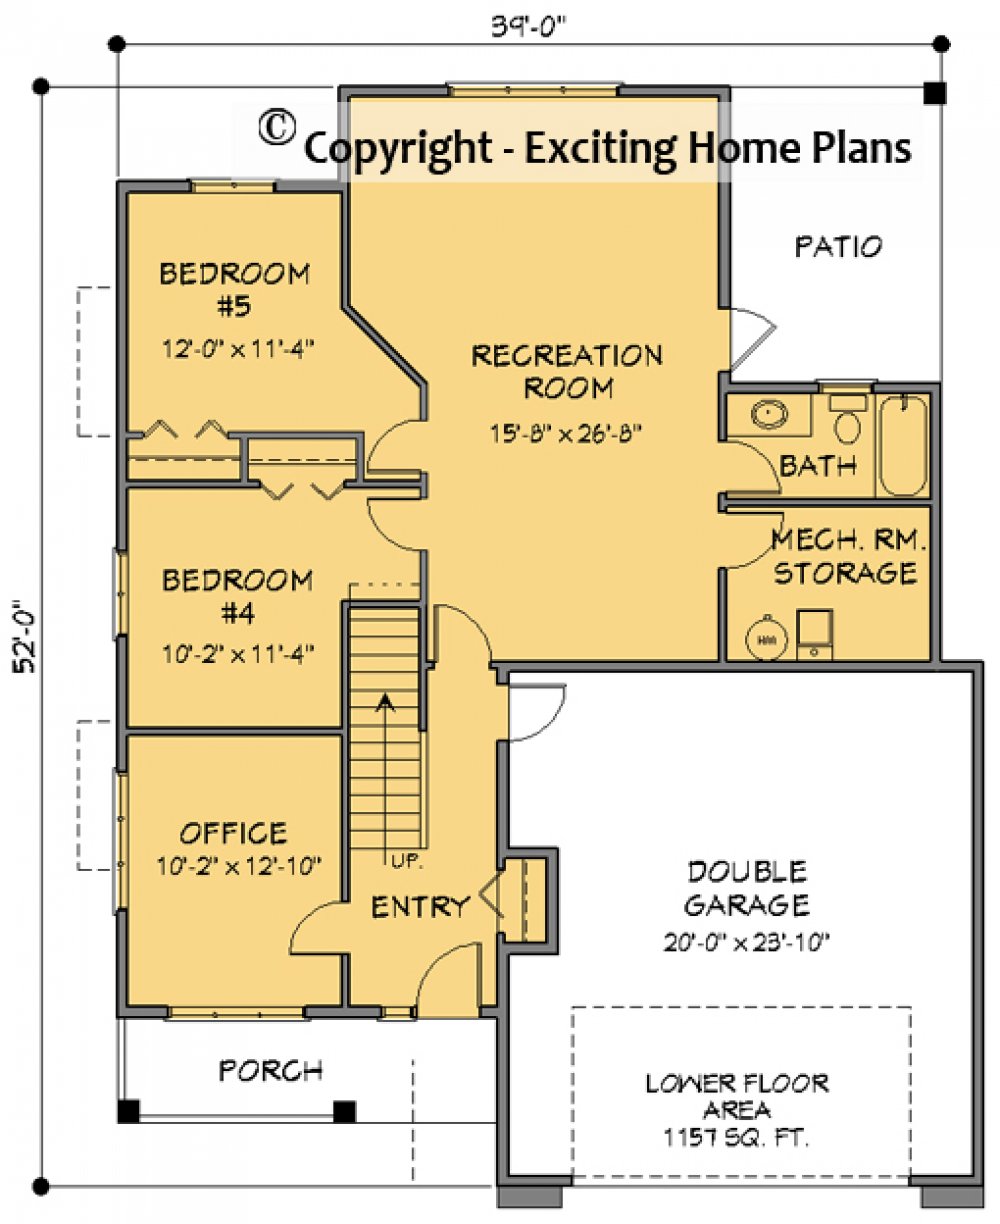 House Plan E1686-10  Lower Floor Plan